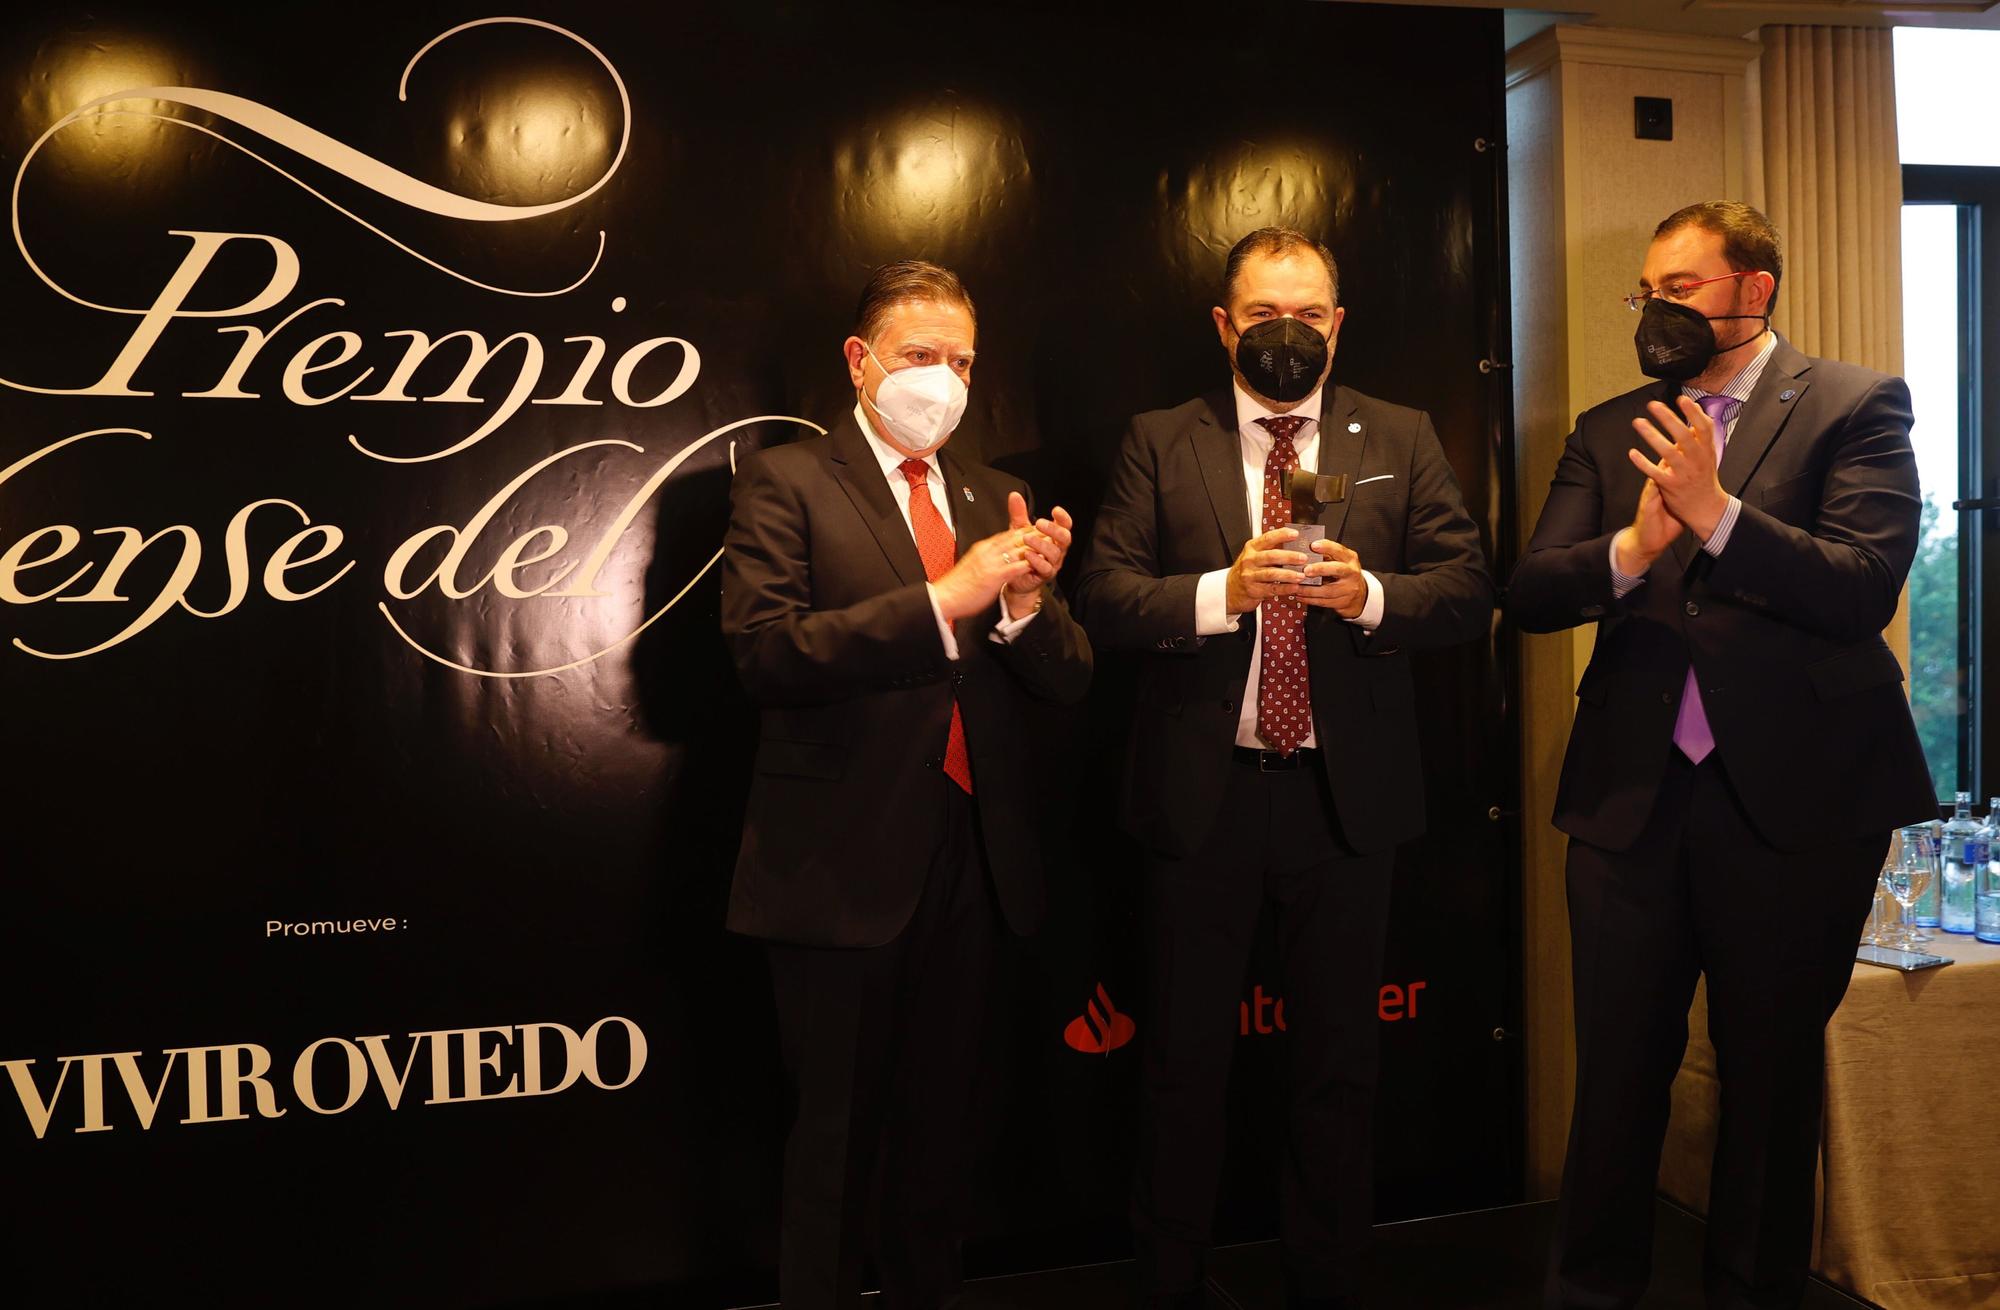 Entrega del premio "Oventese del año" al presidente la Cámara de Comercio, Carlos Paniceres